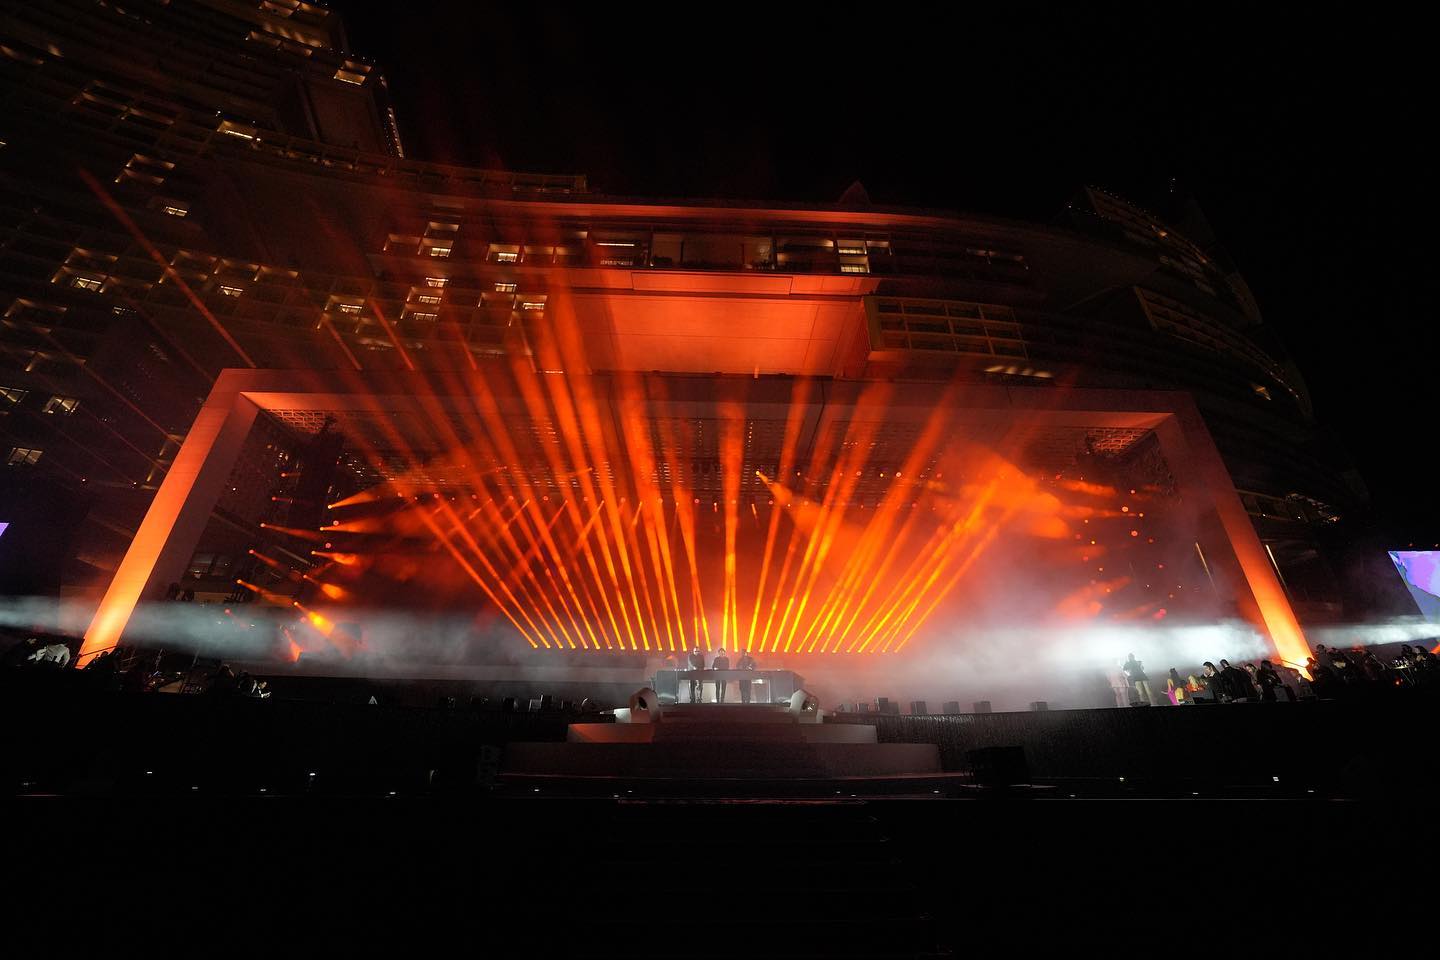 PRG proporcionó un servicio técnico llave en mano para el gran espectáculo de tres días de duración, que incluyó una gigantesca instalación de iluminación en toda la fachada de la propiedad, así como audio, vídeo y rigging a gran escala para el evento "Grand Reveal" de Atlantis.